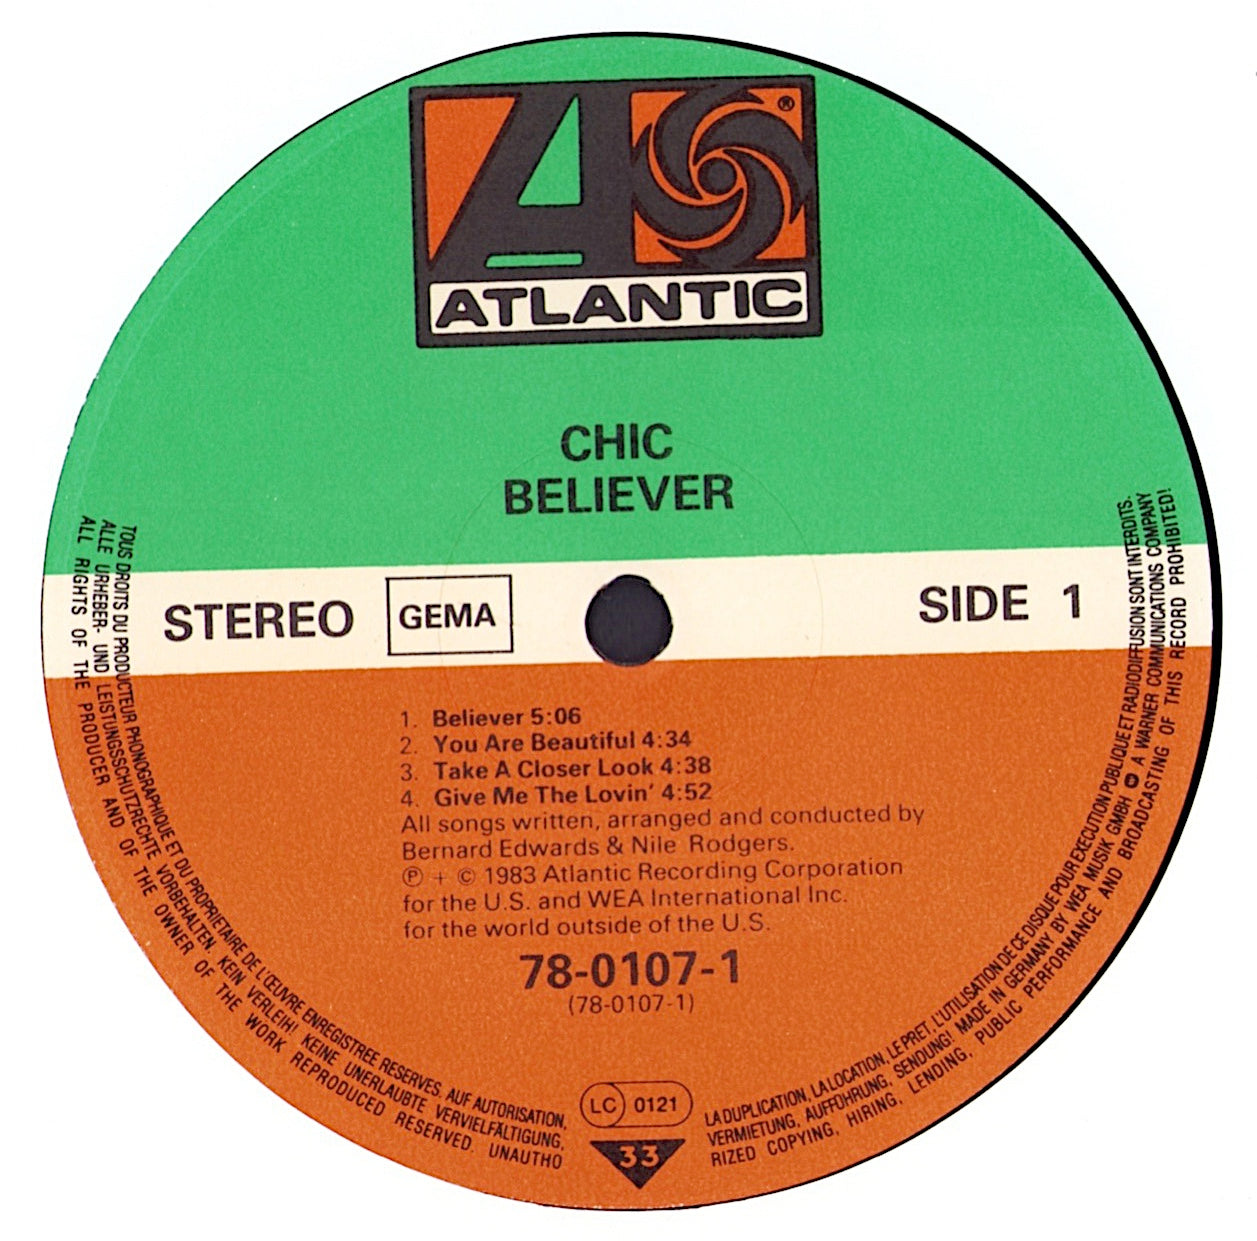 Chic - Believer Vinyl LP